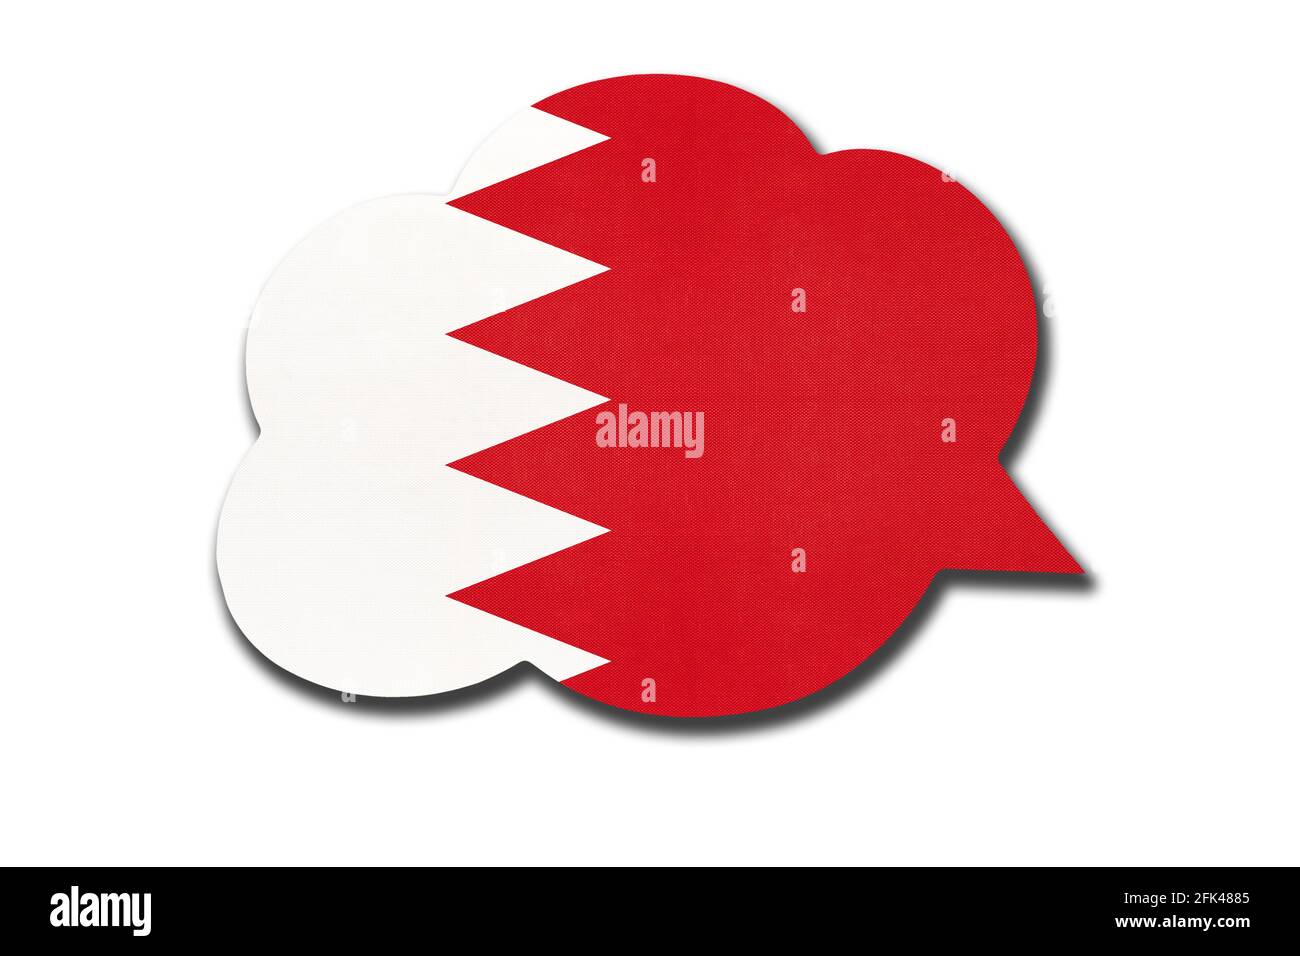 3d-Sprechblase mit der nationalen Flagge bahrains auf weißem Hintergrund isoliert. Sprechen und lernen Sie Arabisch. Symbol des Landes Bahrain. Weltkommunica Stockfoto